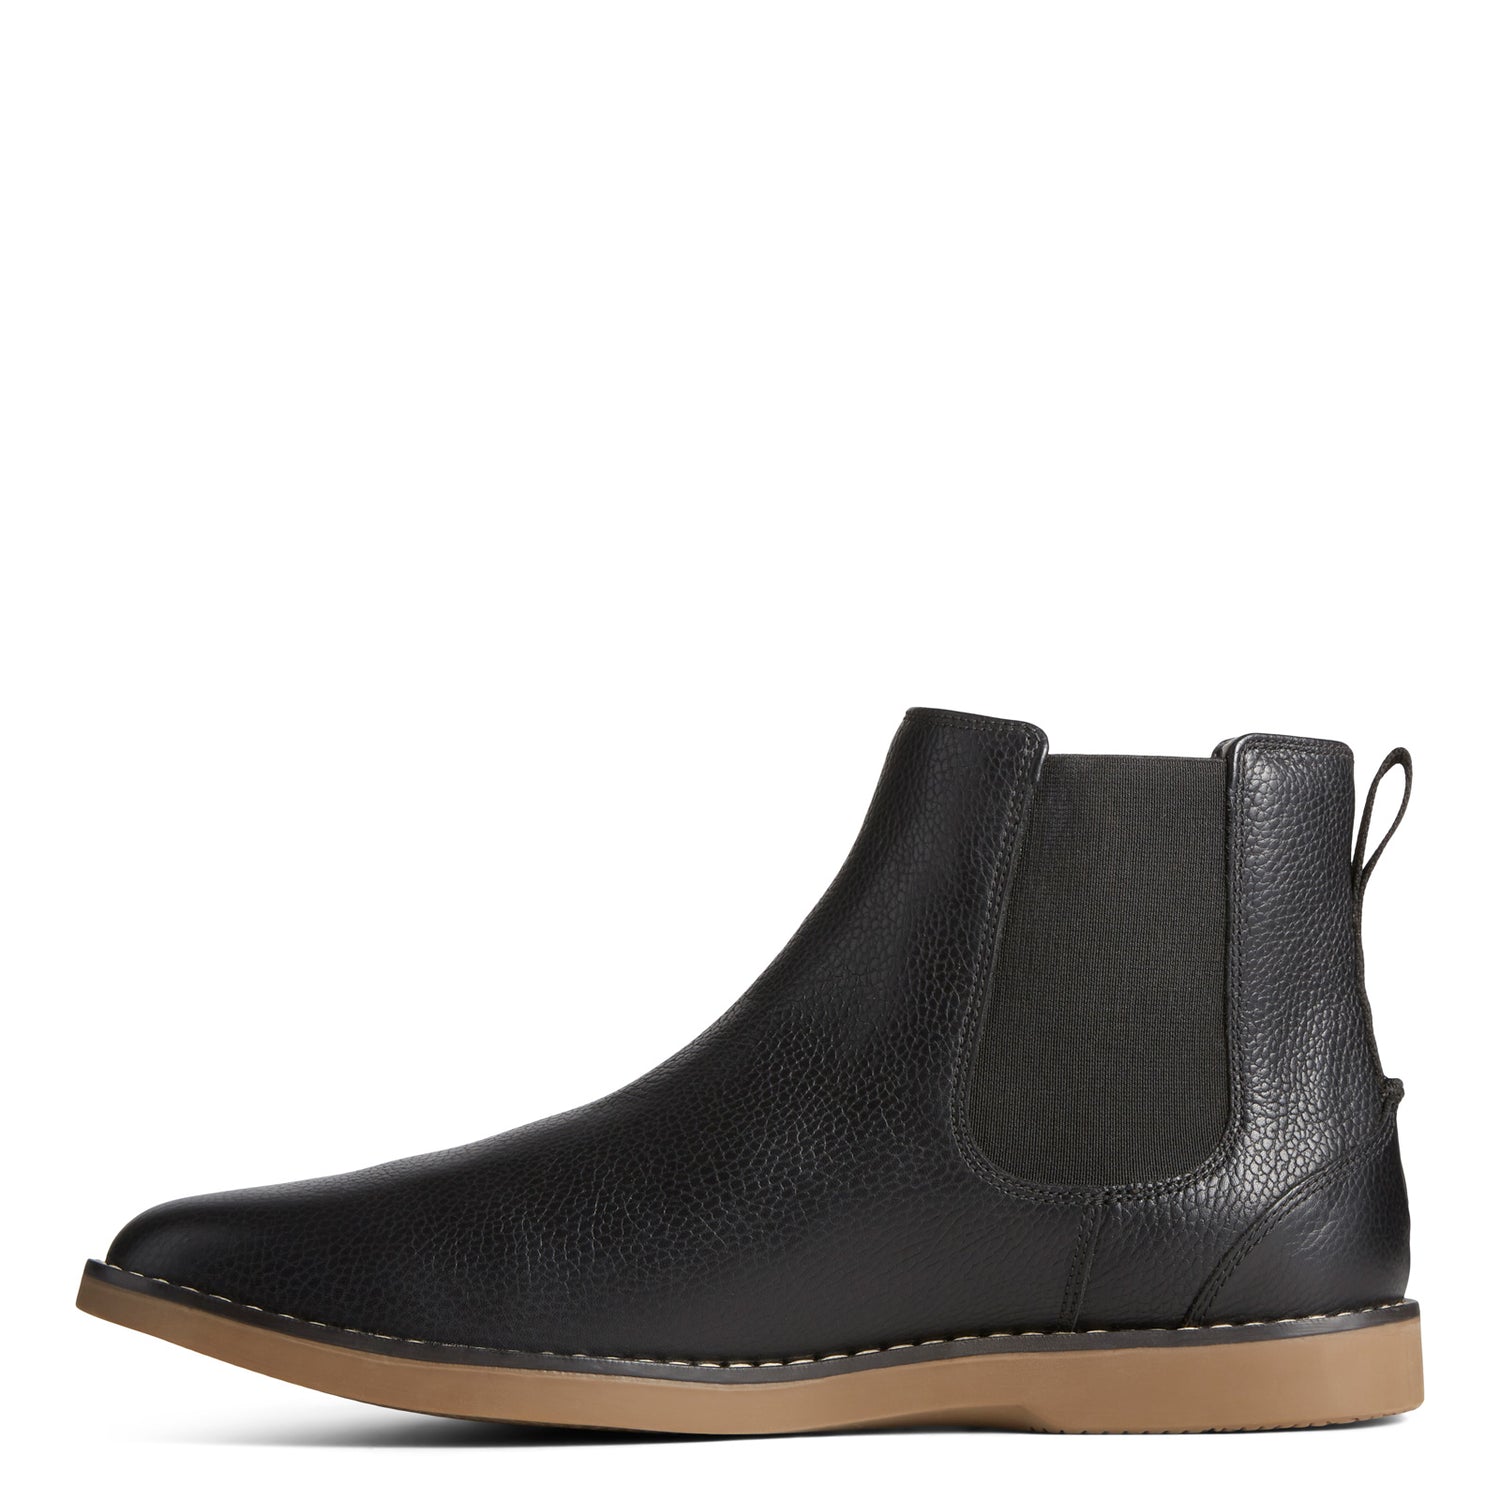 Peltz Shoes  Men's Sperry Newman Chelsea Boot Black STS25405